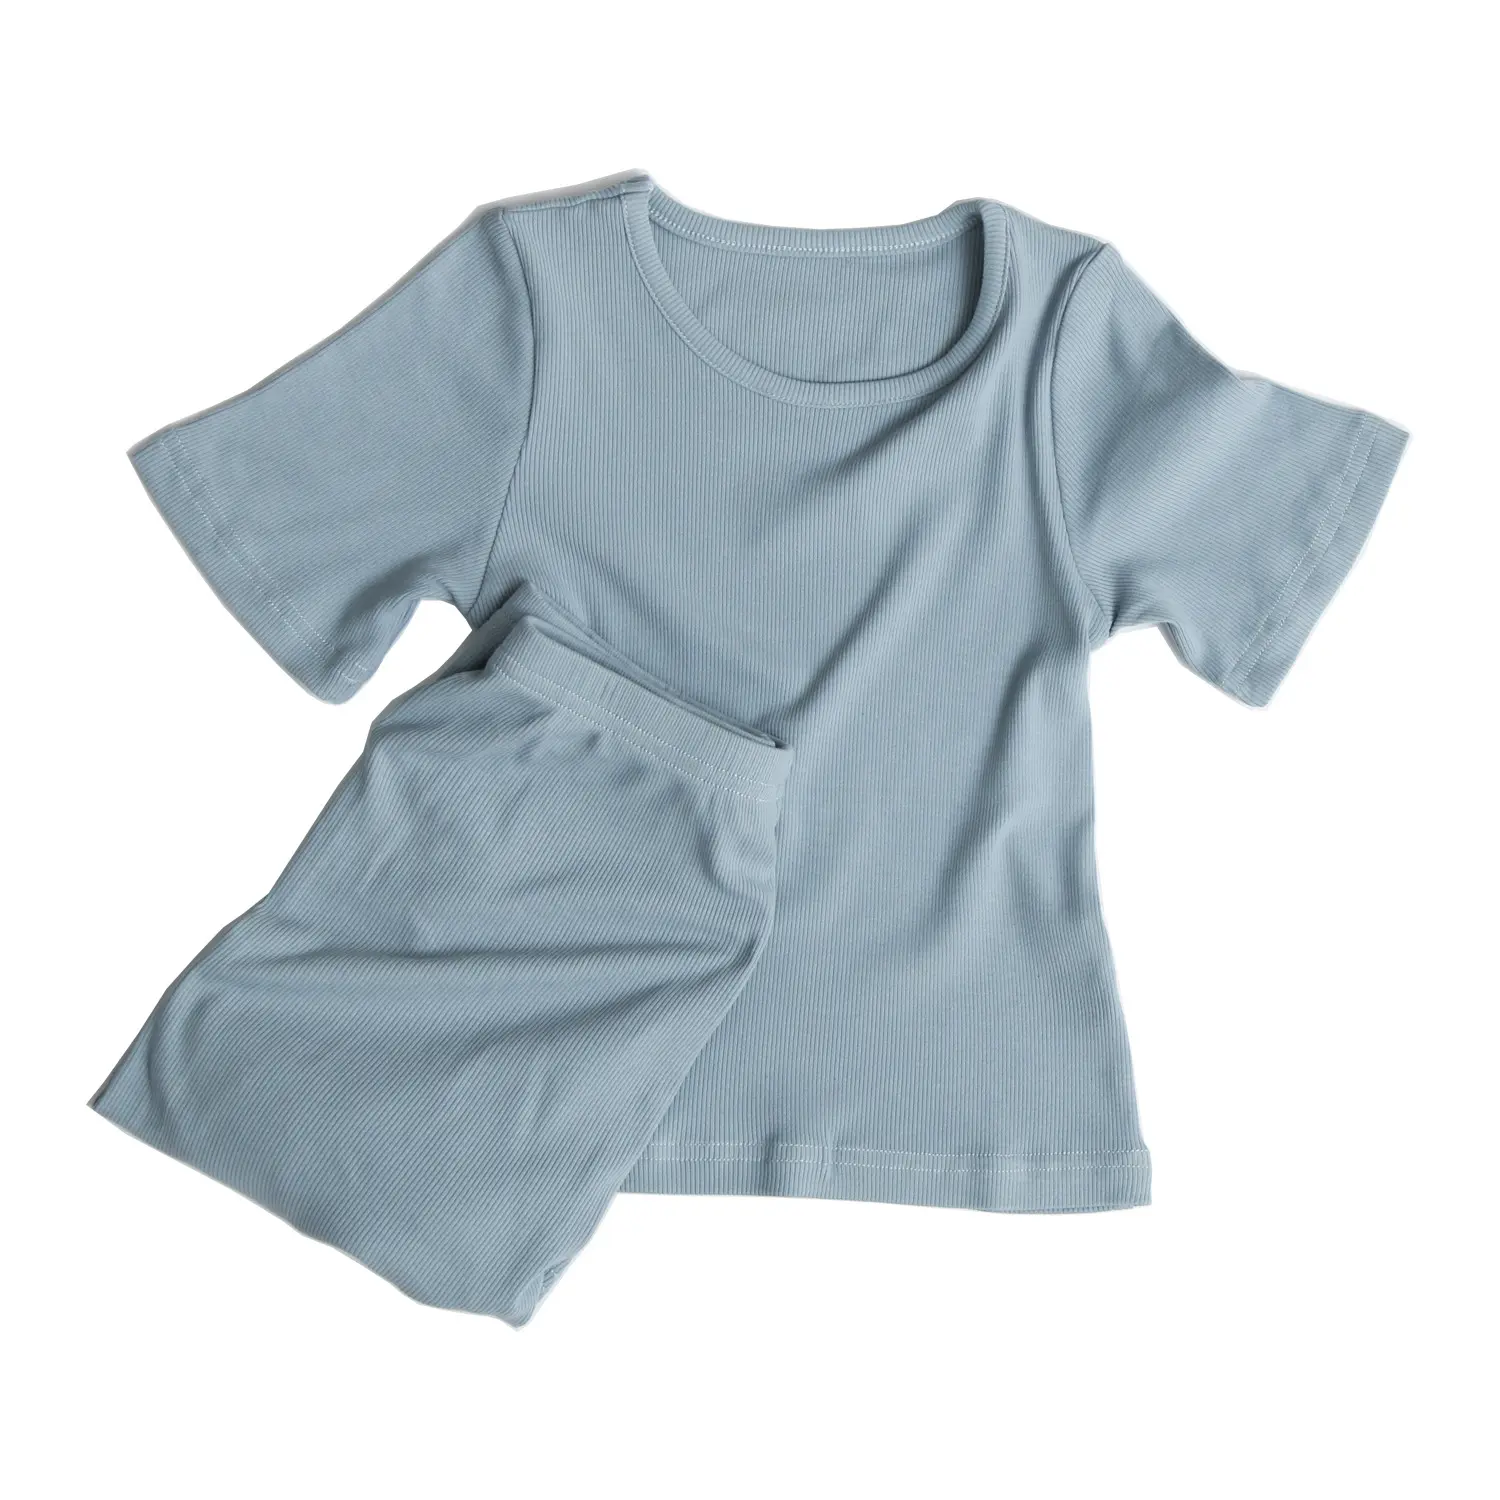 תינוק בני בנות ילדי פעוט להתאמה מצולעים מכנסיים הלבשת לחיי היומיום סגנון כותנה ילדי פיג 'מה סט